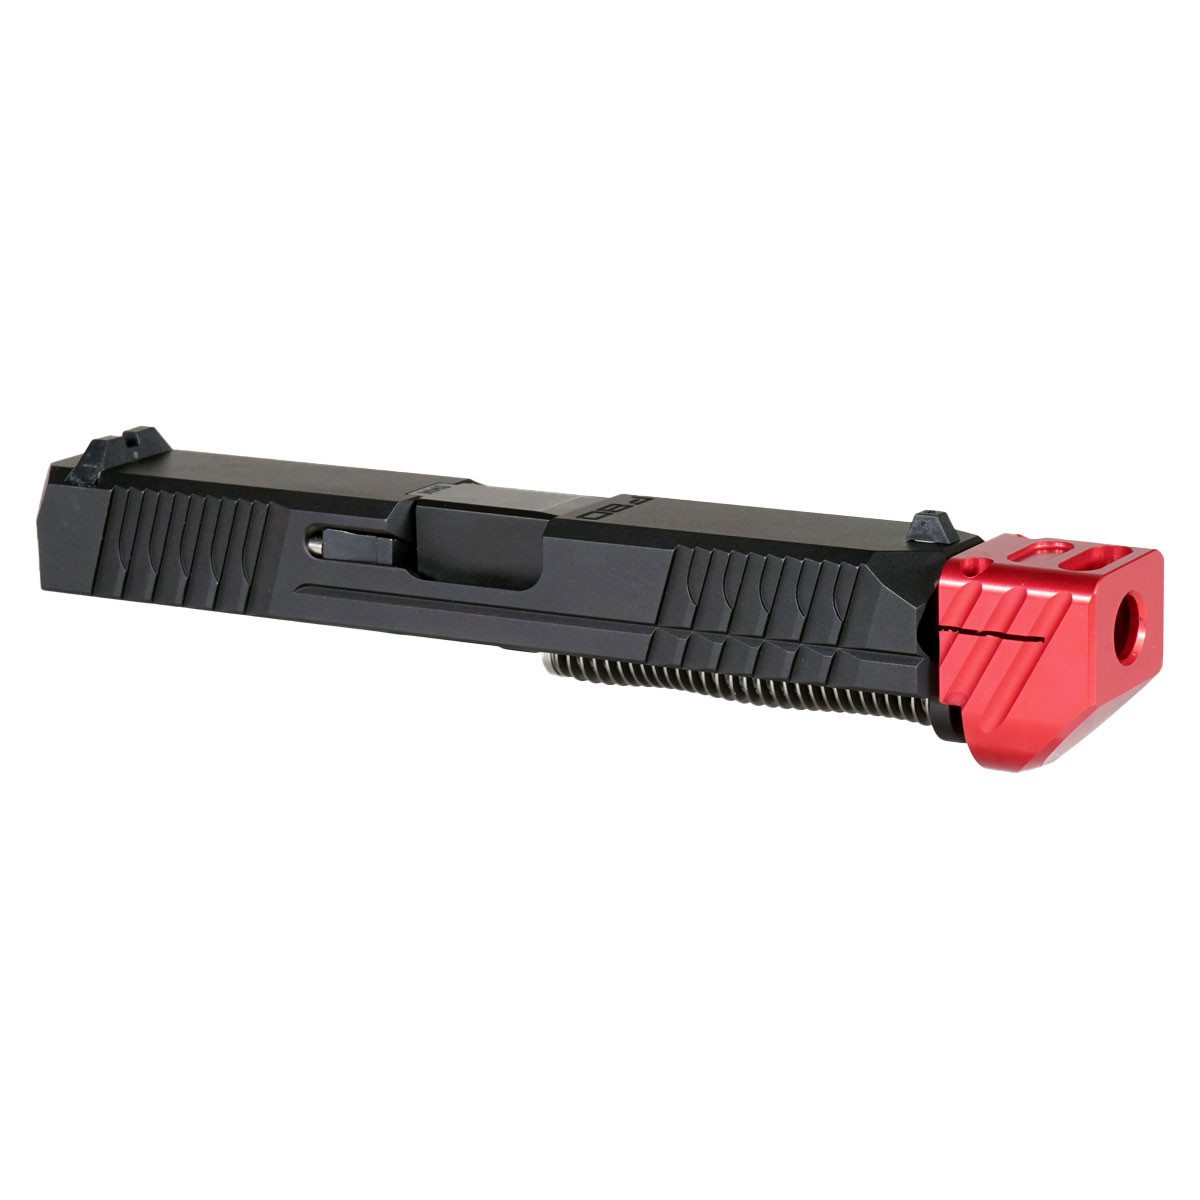 MMC 'Paracausal V3 w/ Red Compensator' 9mm Complete Slide Kit - Glock 19 Gen 1-3 Compatible